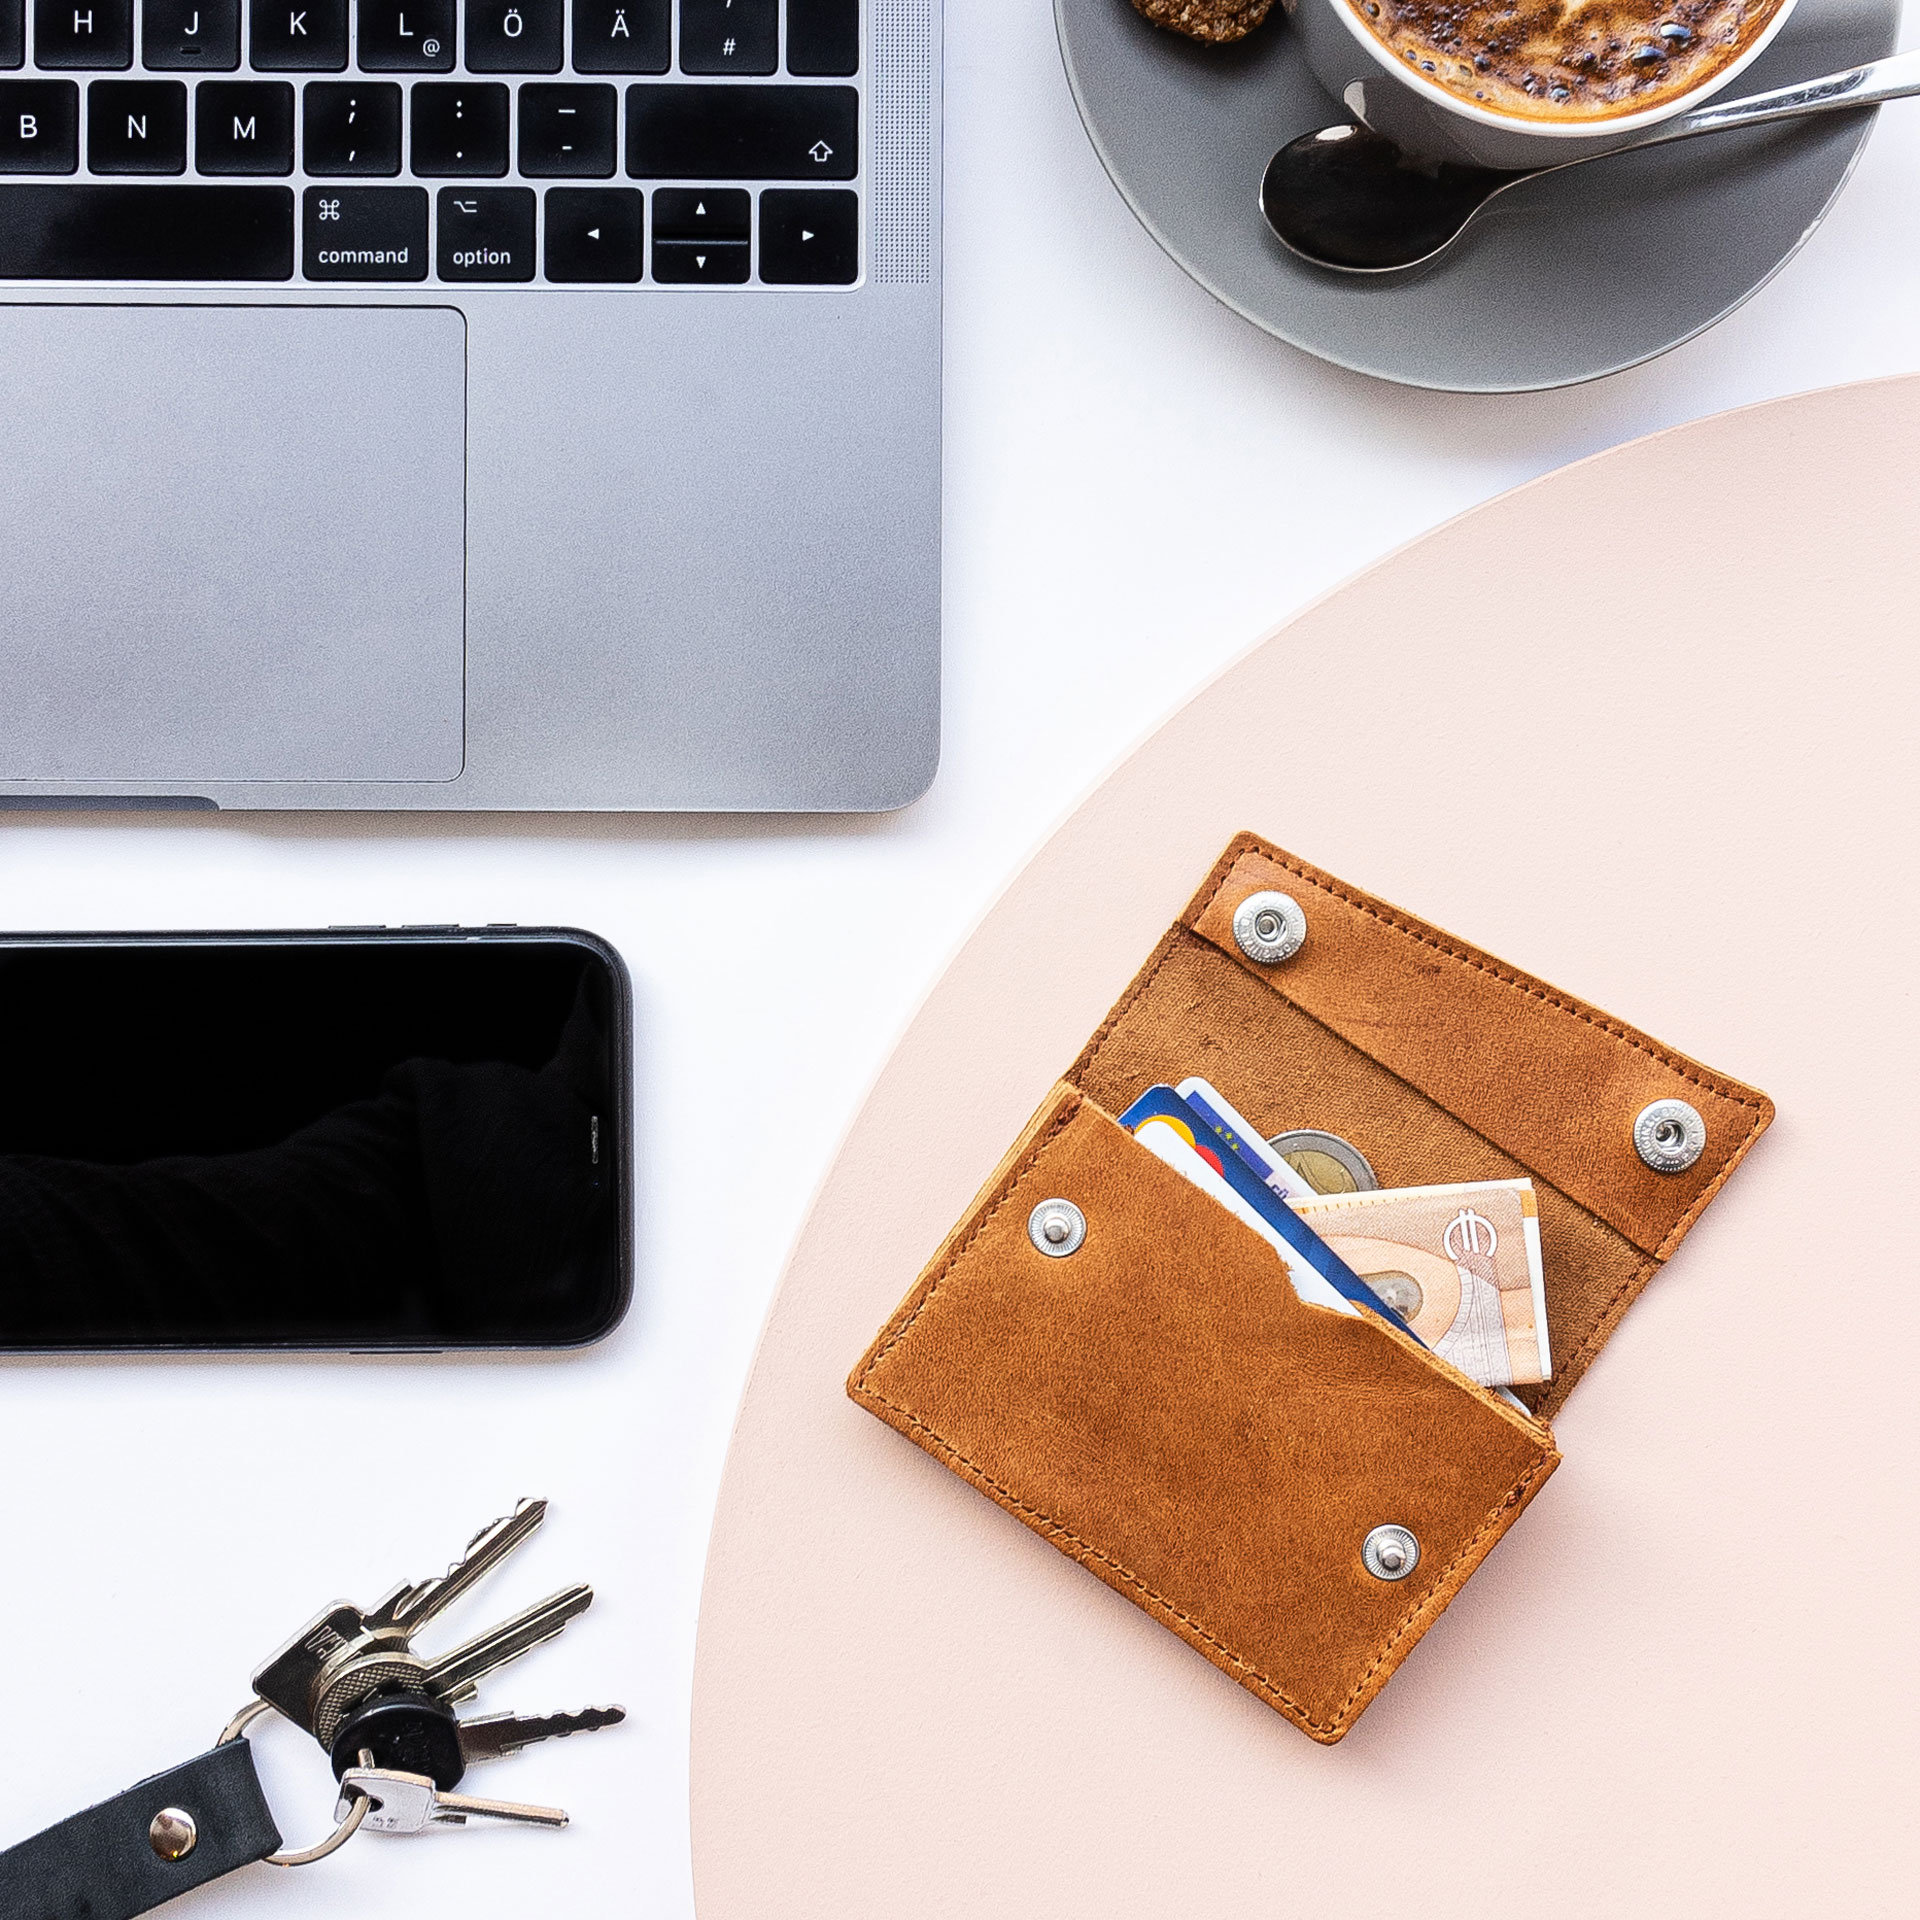 Portemonnaie ENO auf einem Tisch liegen im Größenvergleich mit einem Smartphne, Laptop, Kaffee und Schlüsselbund.